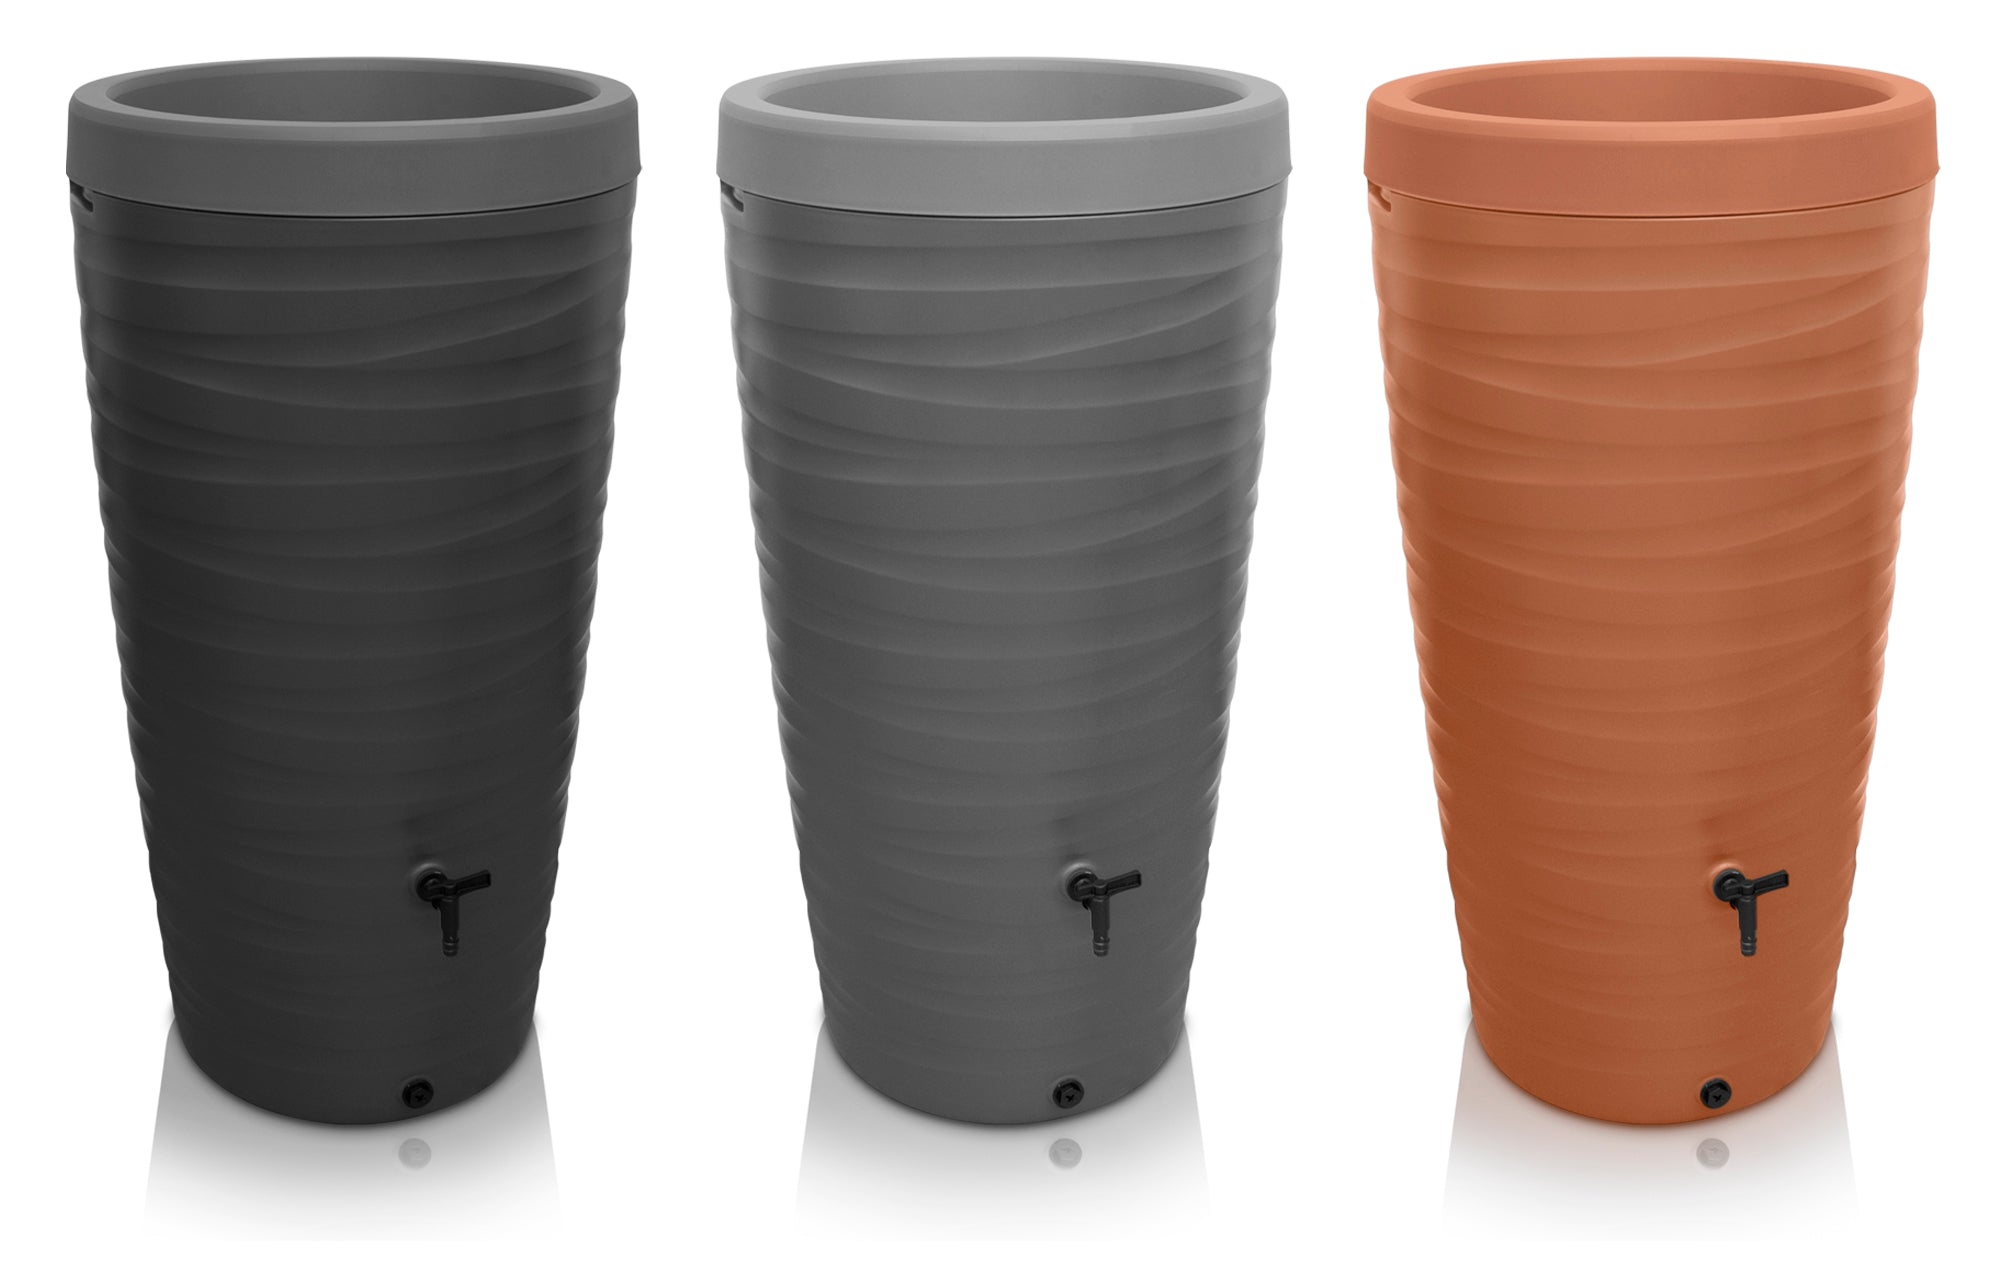 Drei hohe YourCasa Regentonne 240 Liter [Wellen-Design] - Frostsicher & UV-beständige Gartentöpfe in den Farben Schwarz, Grau und Terrakotta, jeweils mit Drainagesystem für nachhaltige Bewässerung.